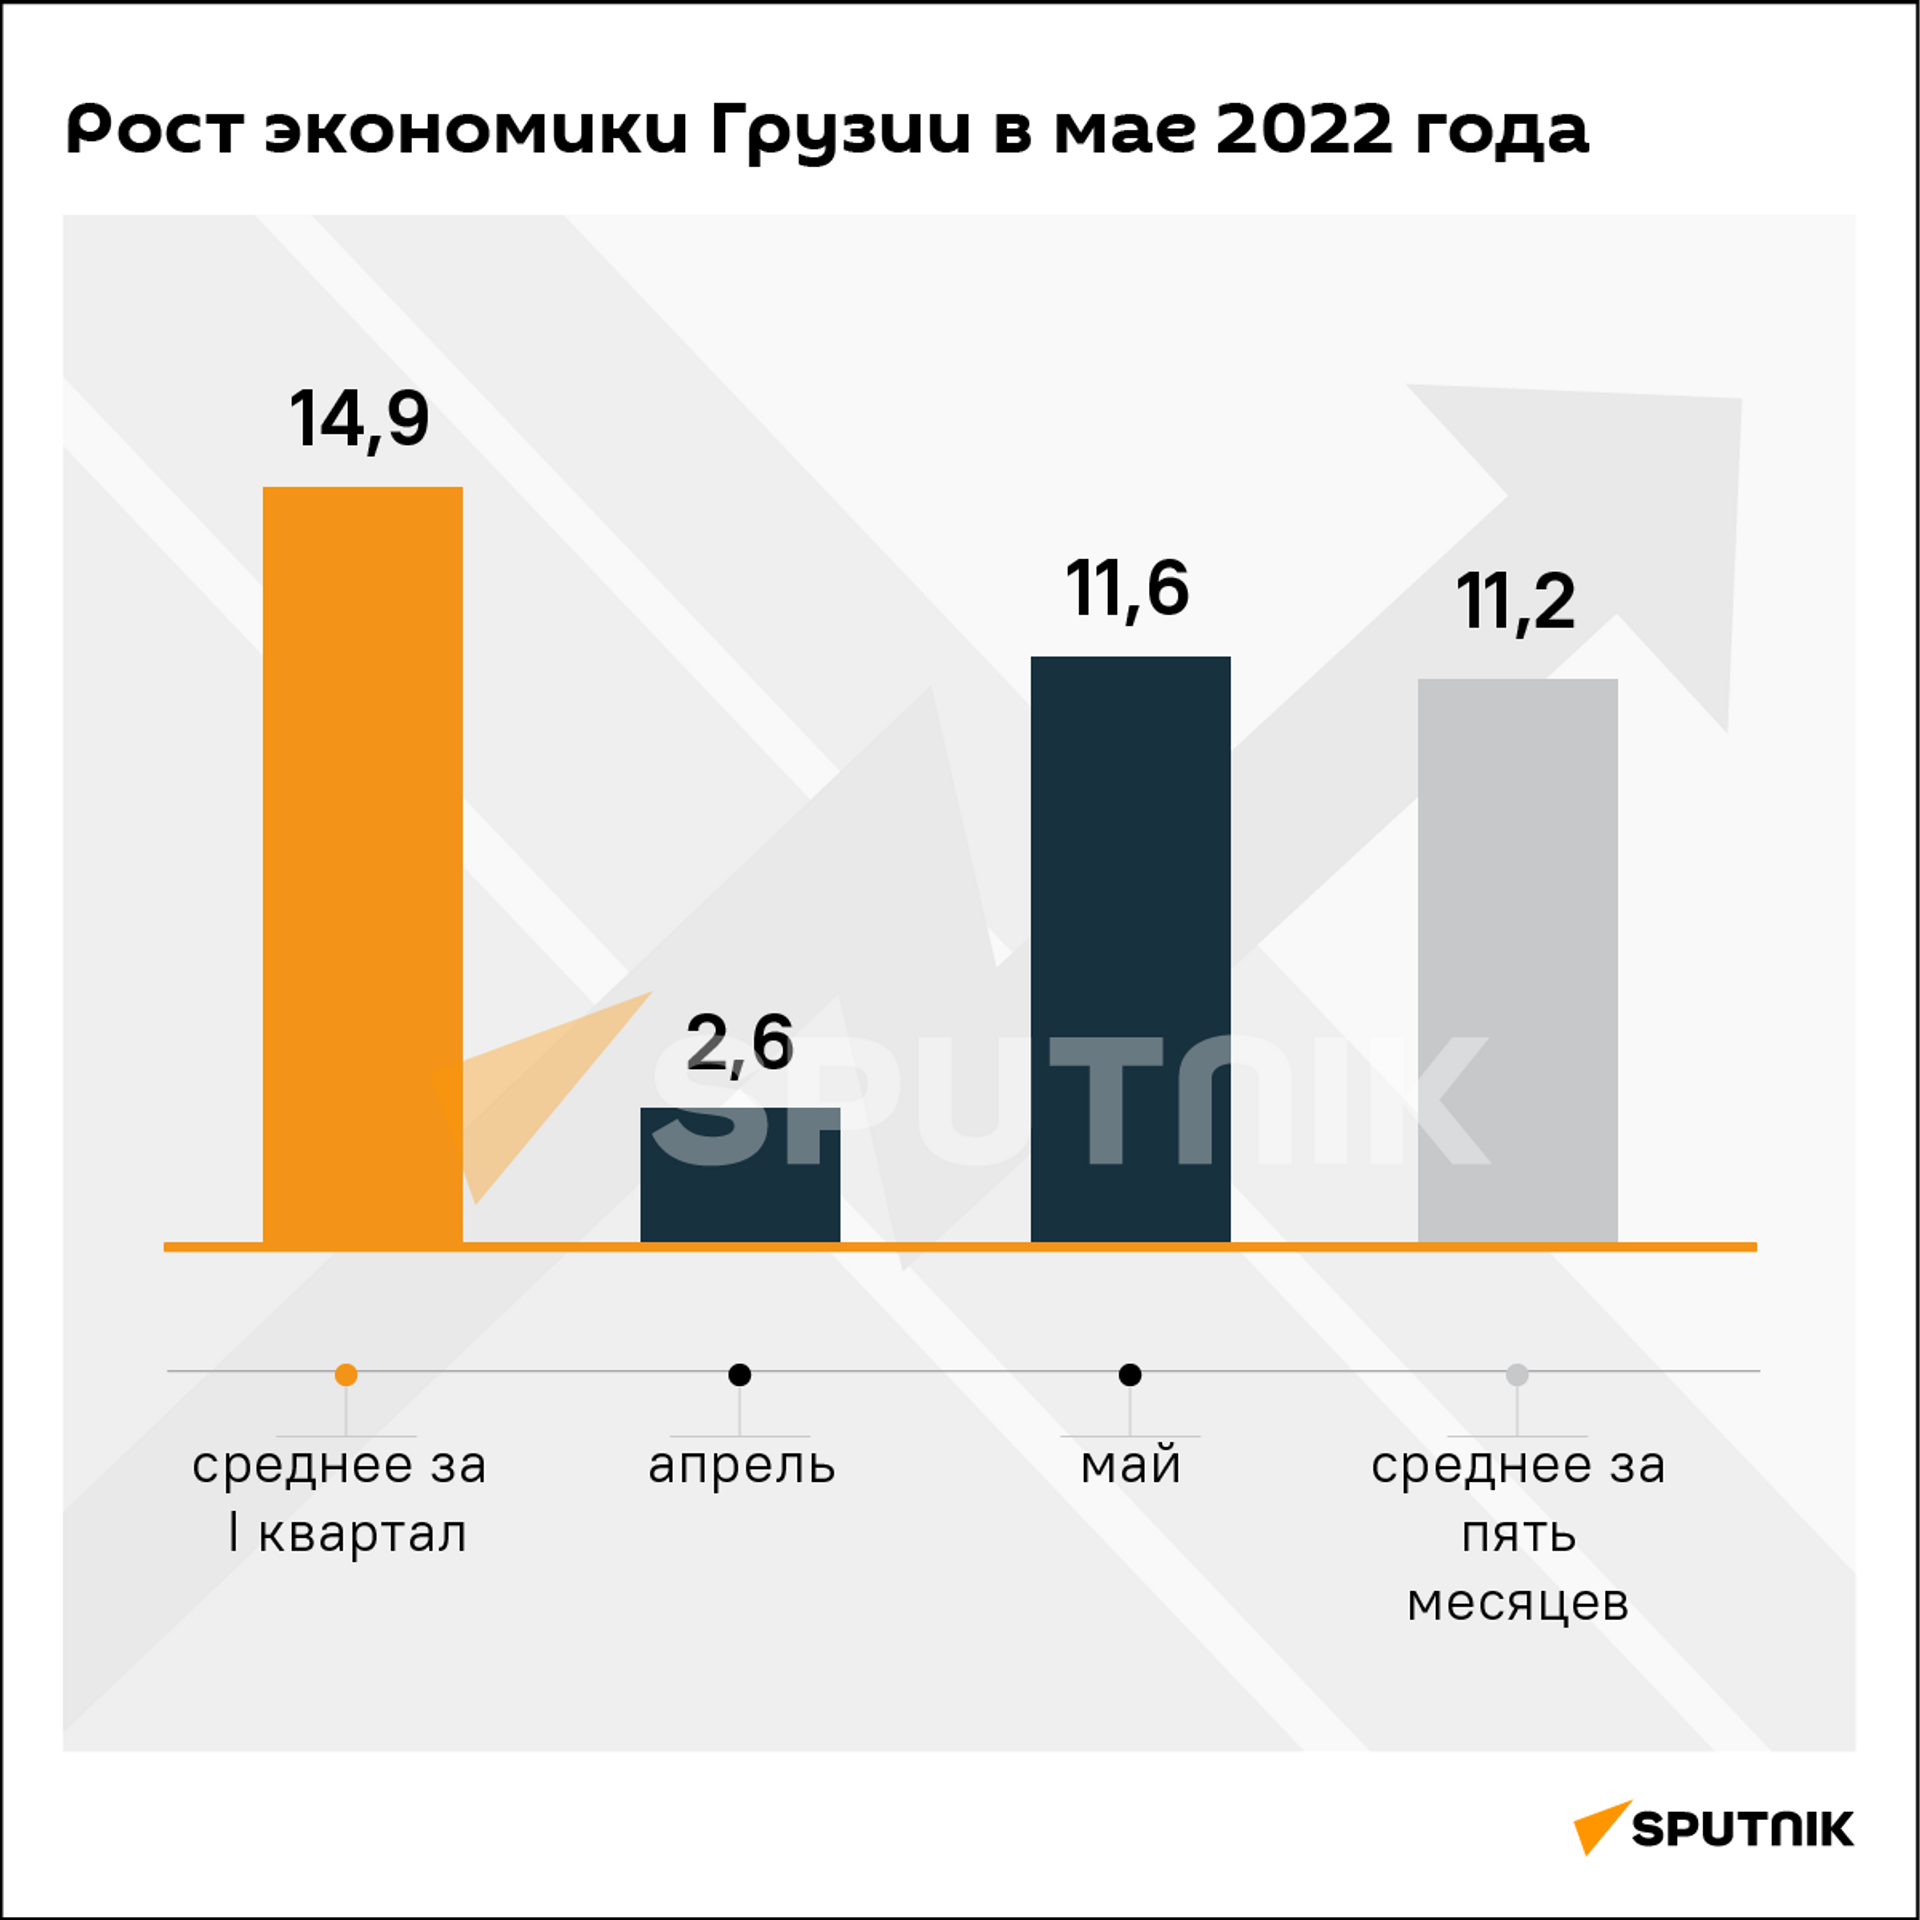 Экономический рост Грузии за май и пять месяцев 2022 года - Sputnik Грузия, 1920, 06.07.2022